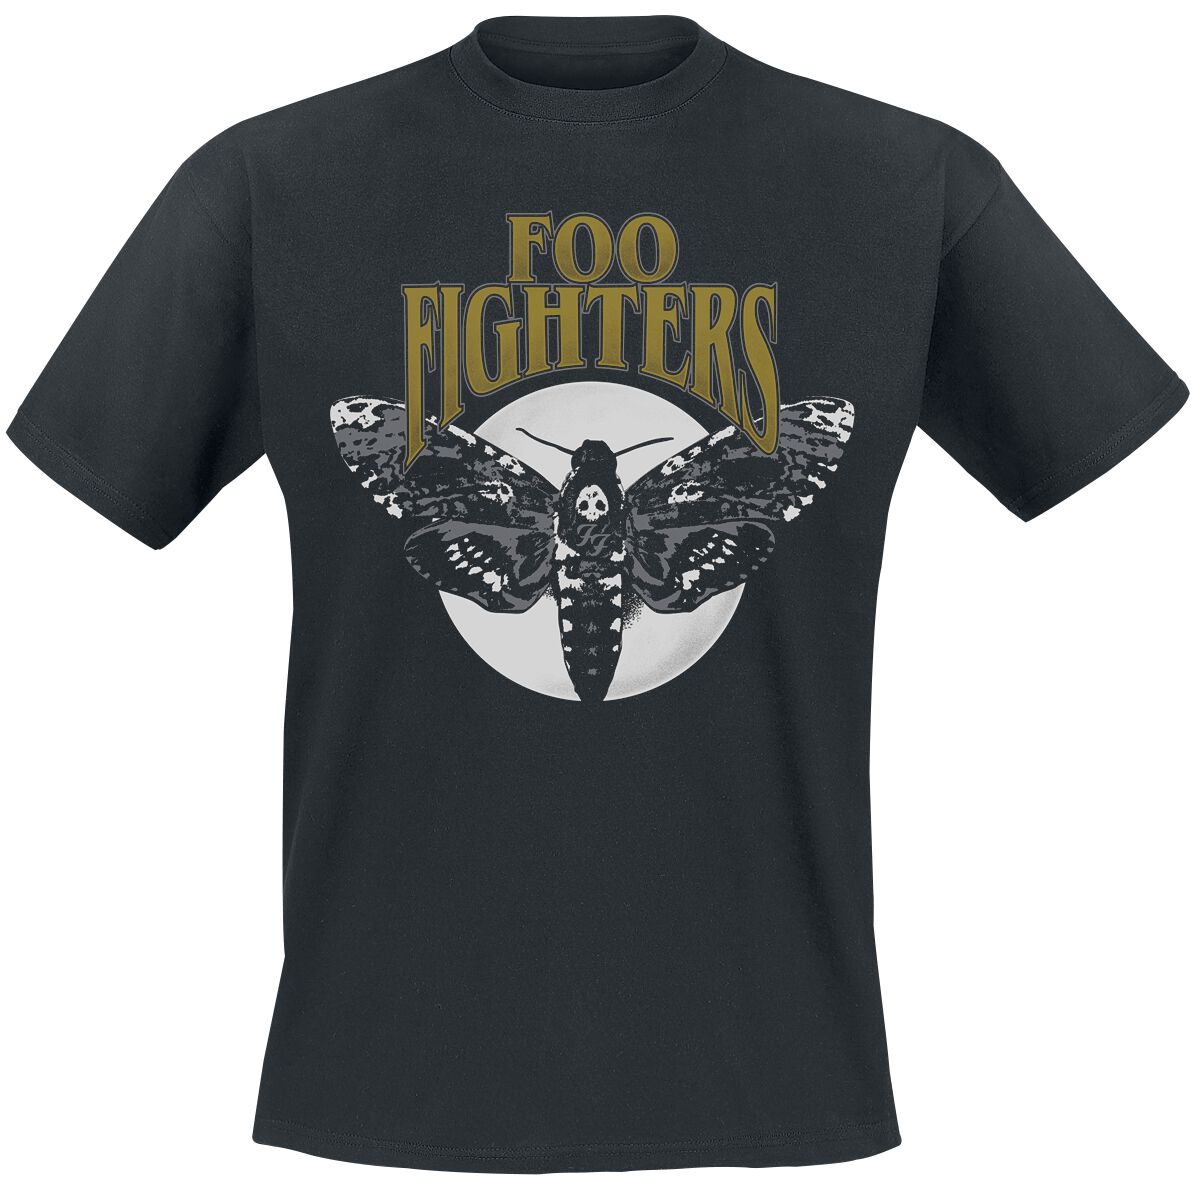 Foo Fighters T-Shirt - Hawk Moth - S bis XXL - für Männer - Größe XXL - schwarz  - Lizenziertes Merchandise!